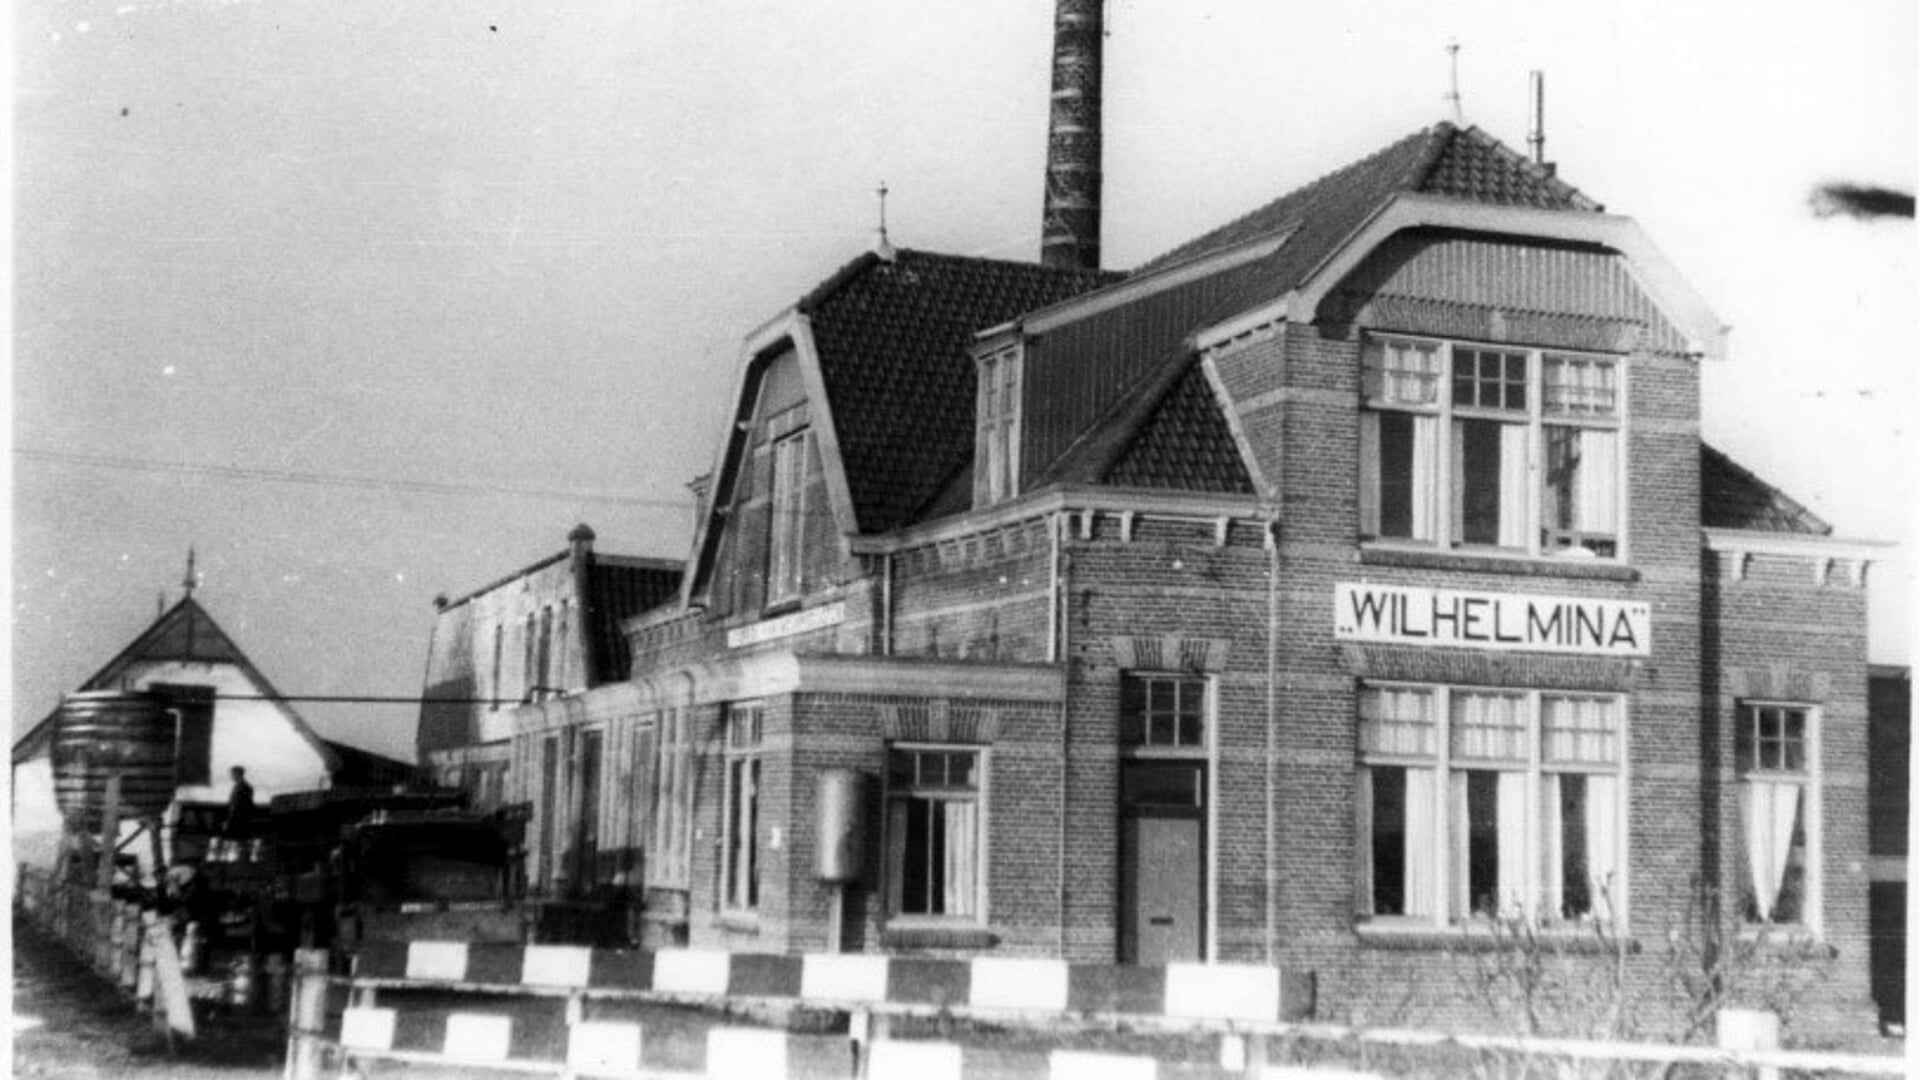 Melkfabriek Wilhelmina Archief familie Miltenburg